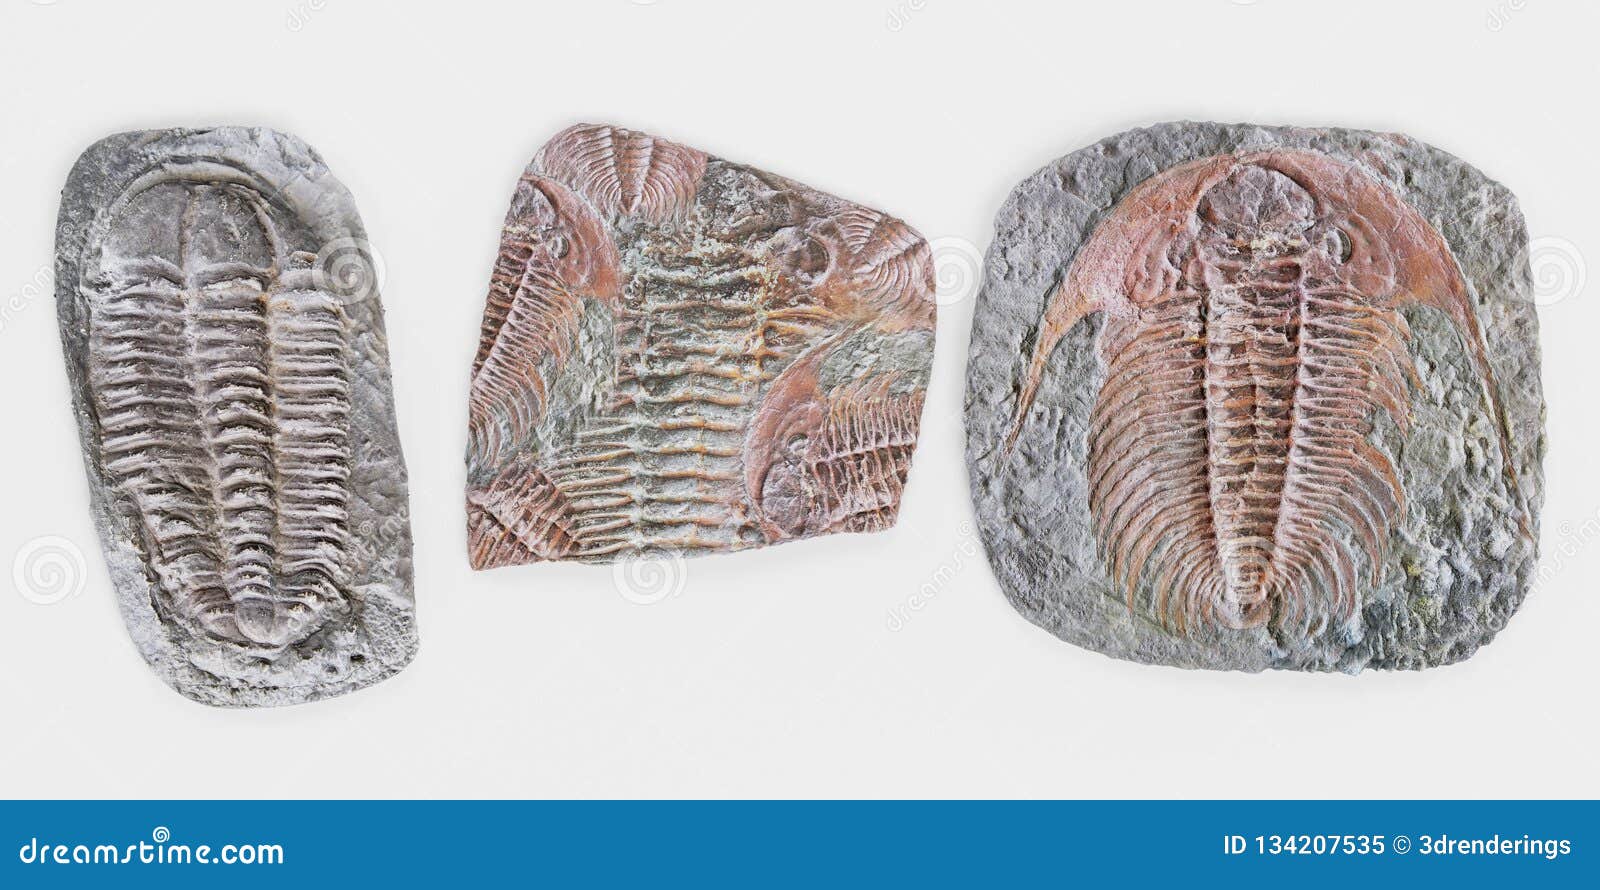 3d render of trilobite fossils